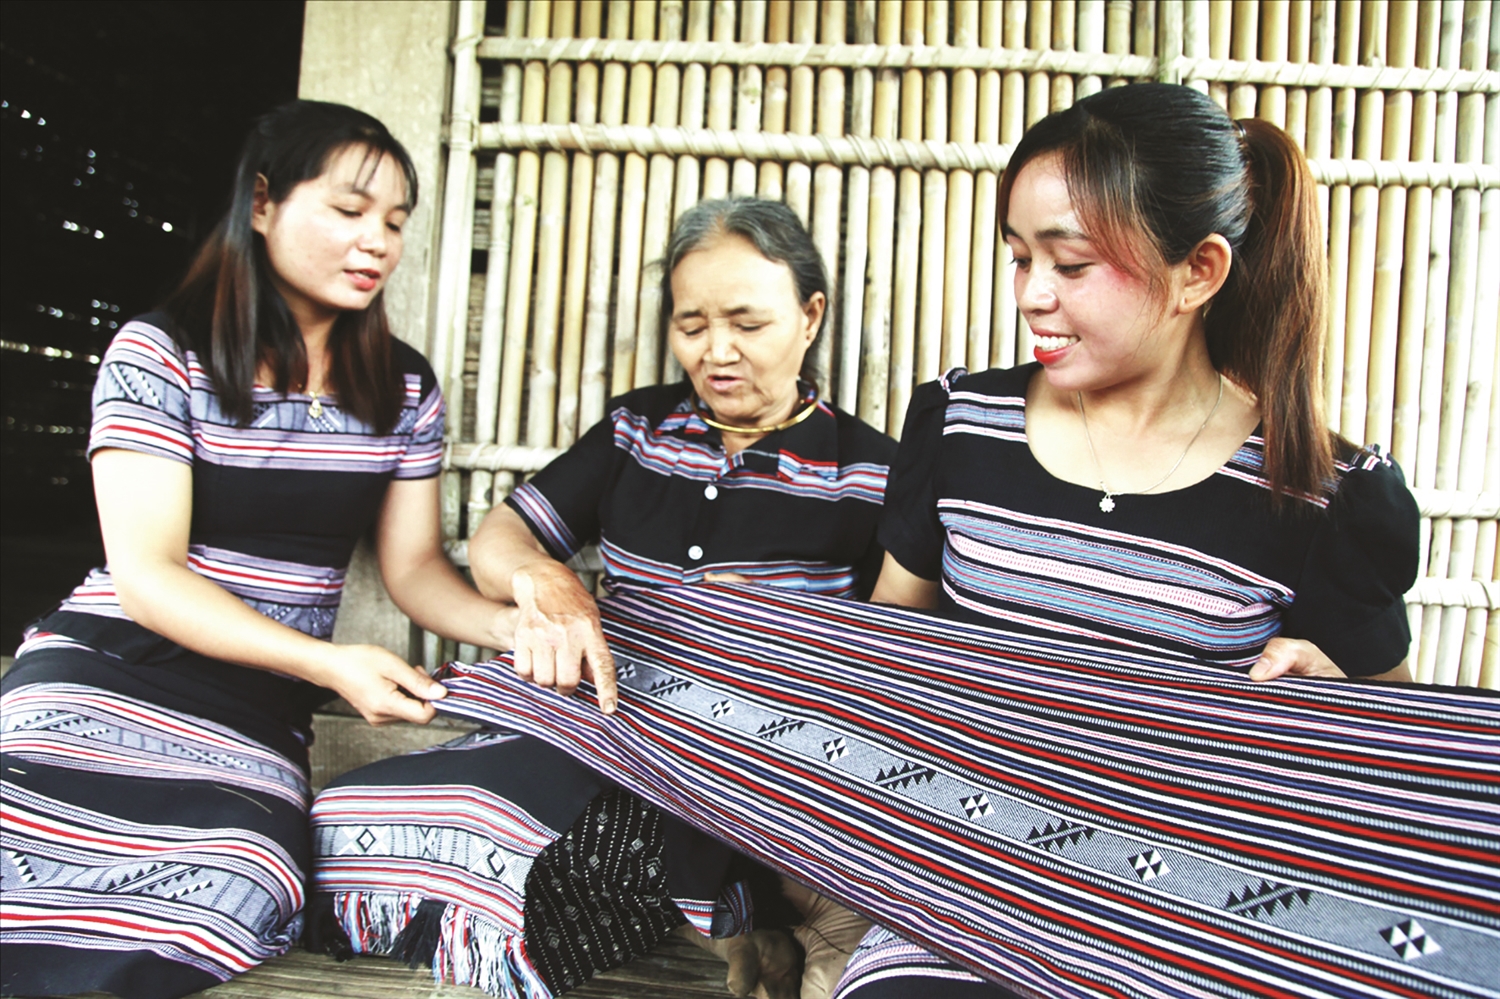 Nhiều bạn trẻ người Hrê tại Làng Teng đam mê dệt thổ cẩm truyền thống là một tín hiệu đáng mừng.